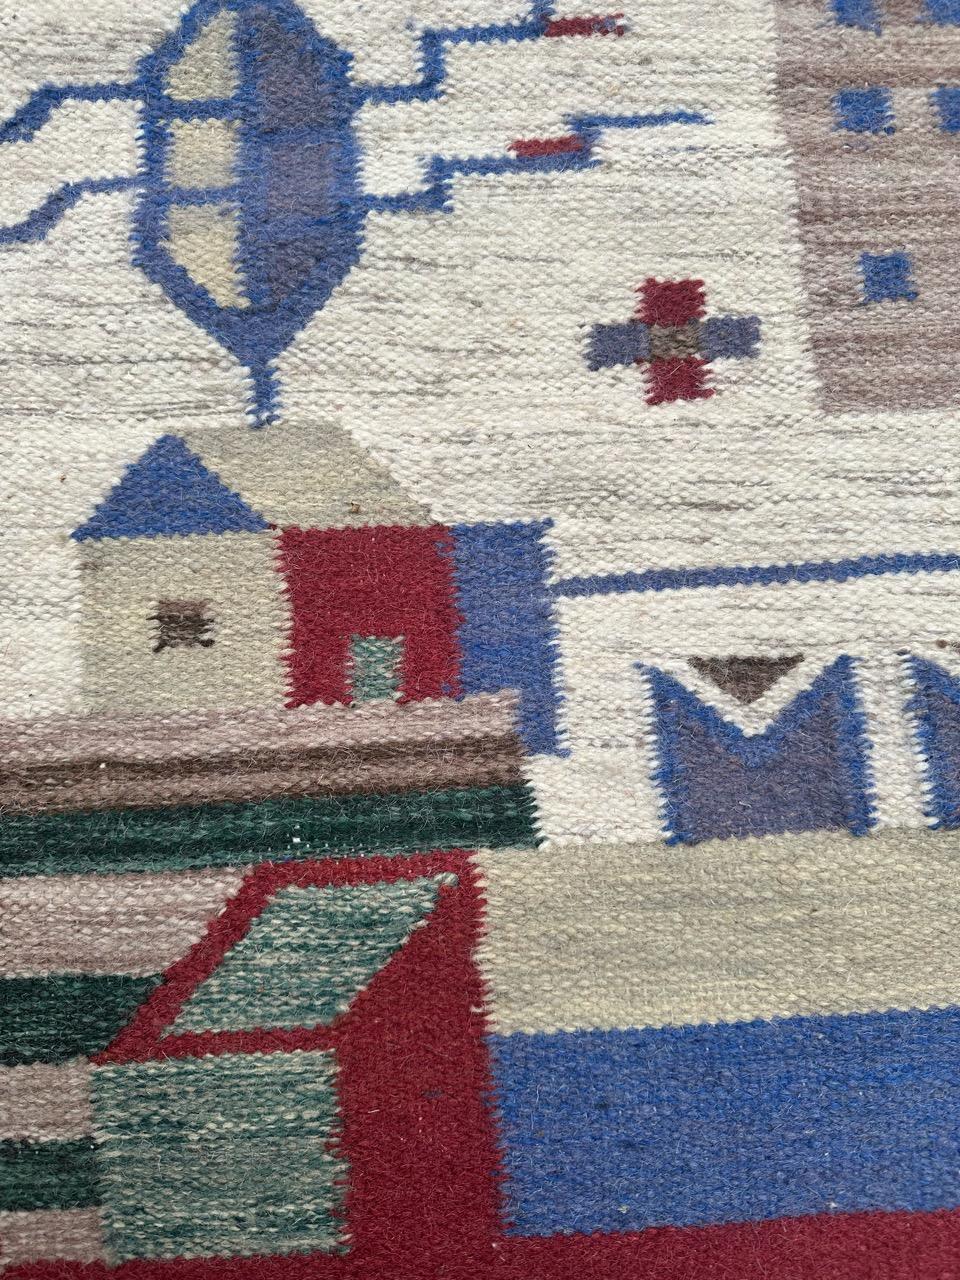 Wunderschöner polnischer Wandteppich aus der Mitte des Jahrhunderts mit einem einheimischen geometrischen Design der Stadt und schönen hellen Farben, komplett handgewebt mit Wolle auf Baumwollbasis

✨✨✨
